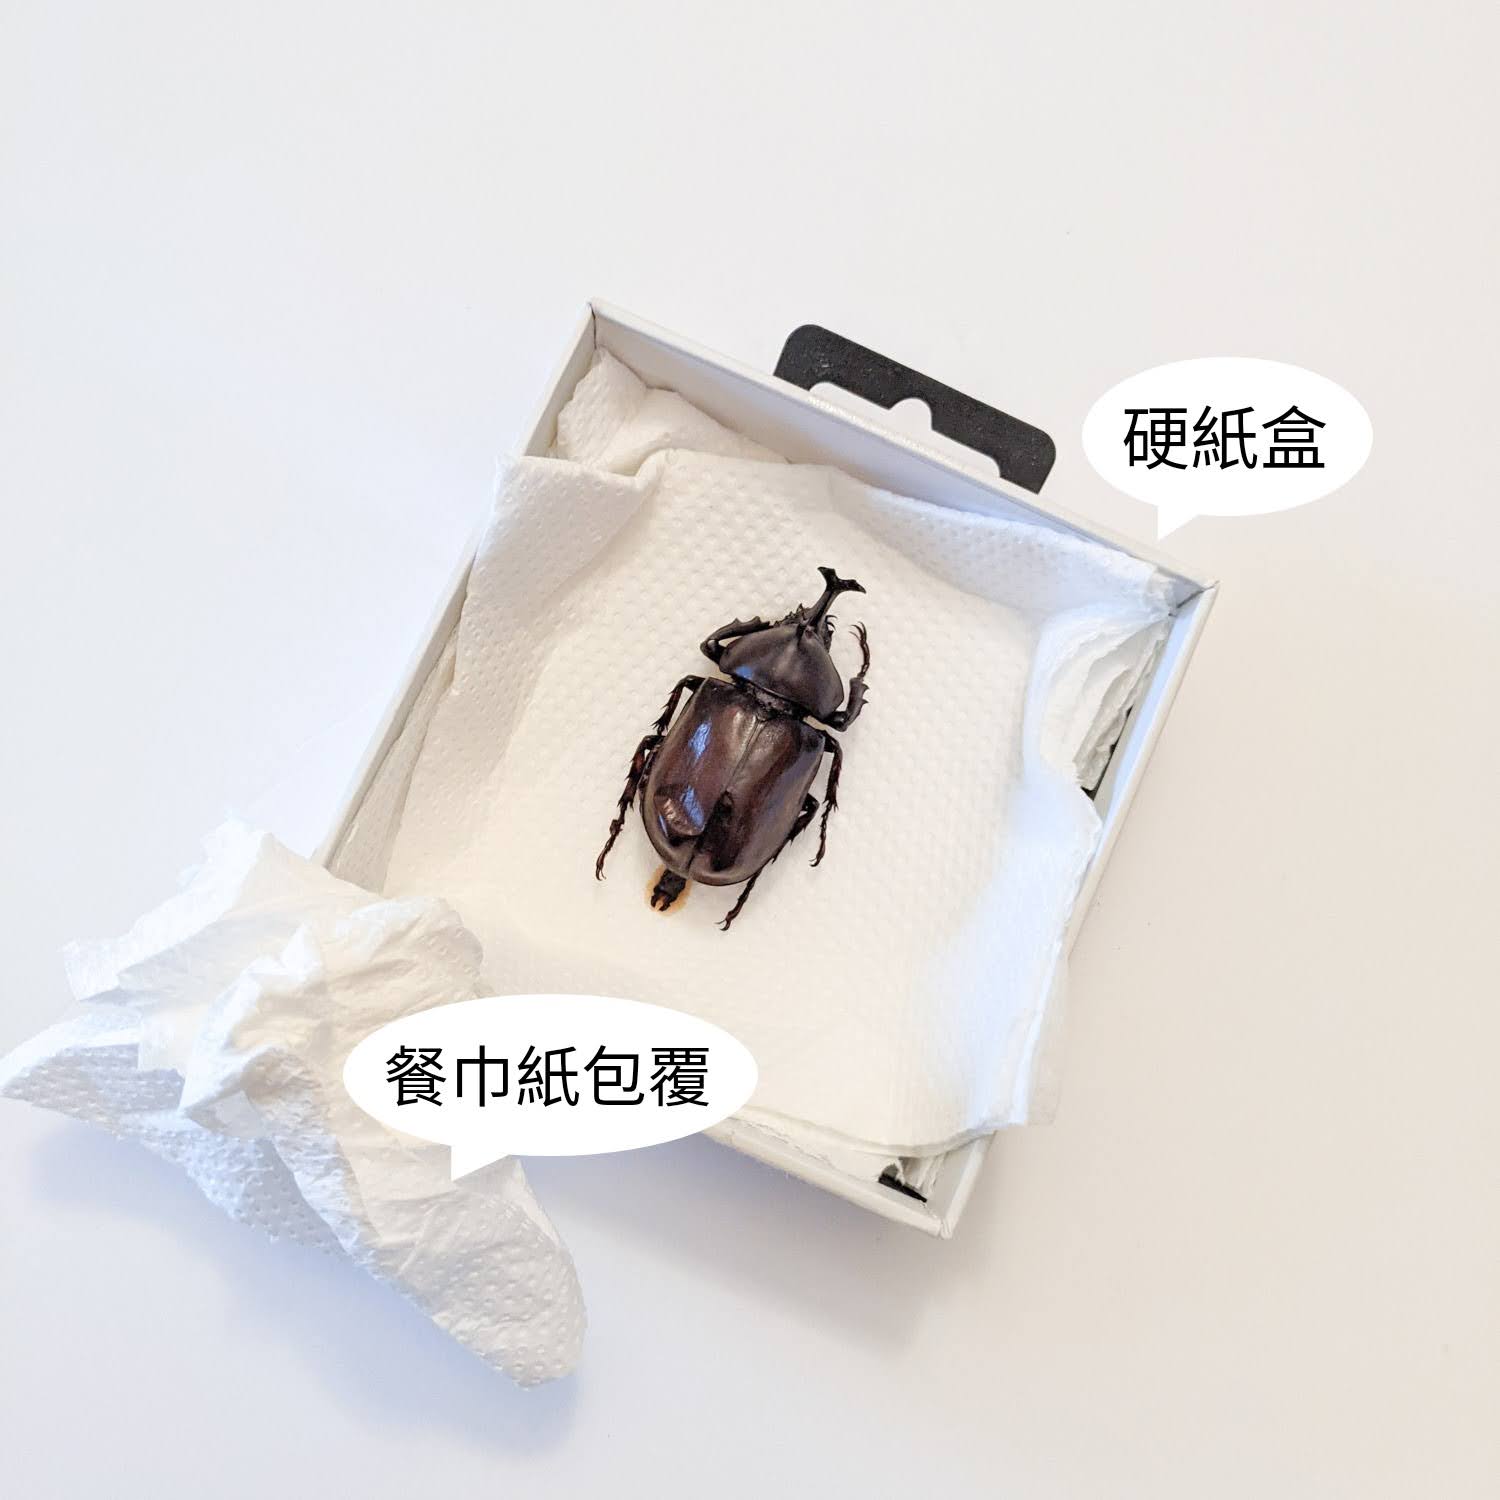 興趣誌-昆蟲標本製作-包裝方式